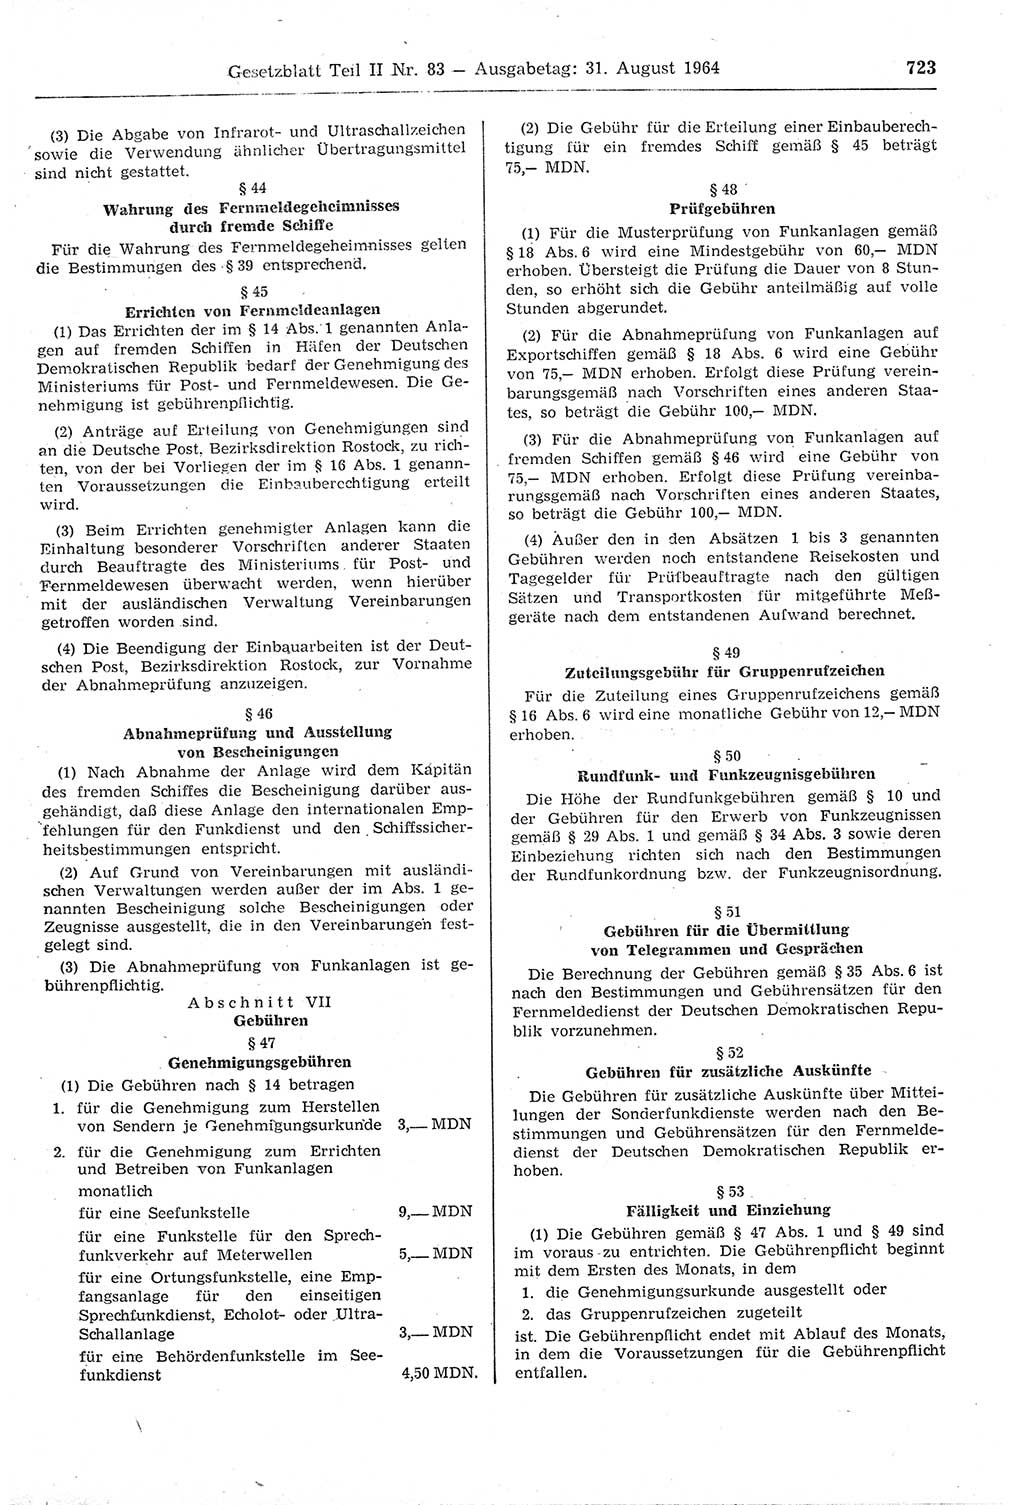 Gesetzblatt (GBl.) der Deutschen Demokratischen Republik (DDR) Teil ⅠⅠ 1964, Seite 723 (GBl. DDR ⅠⅠ 1964, S. 723)